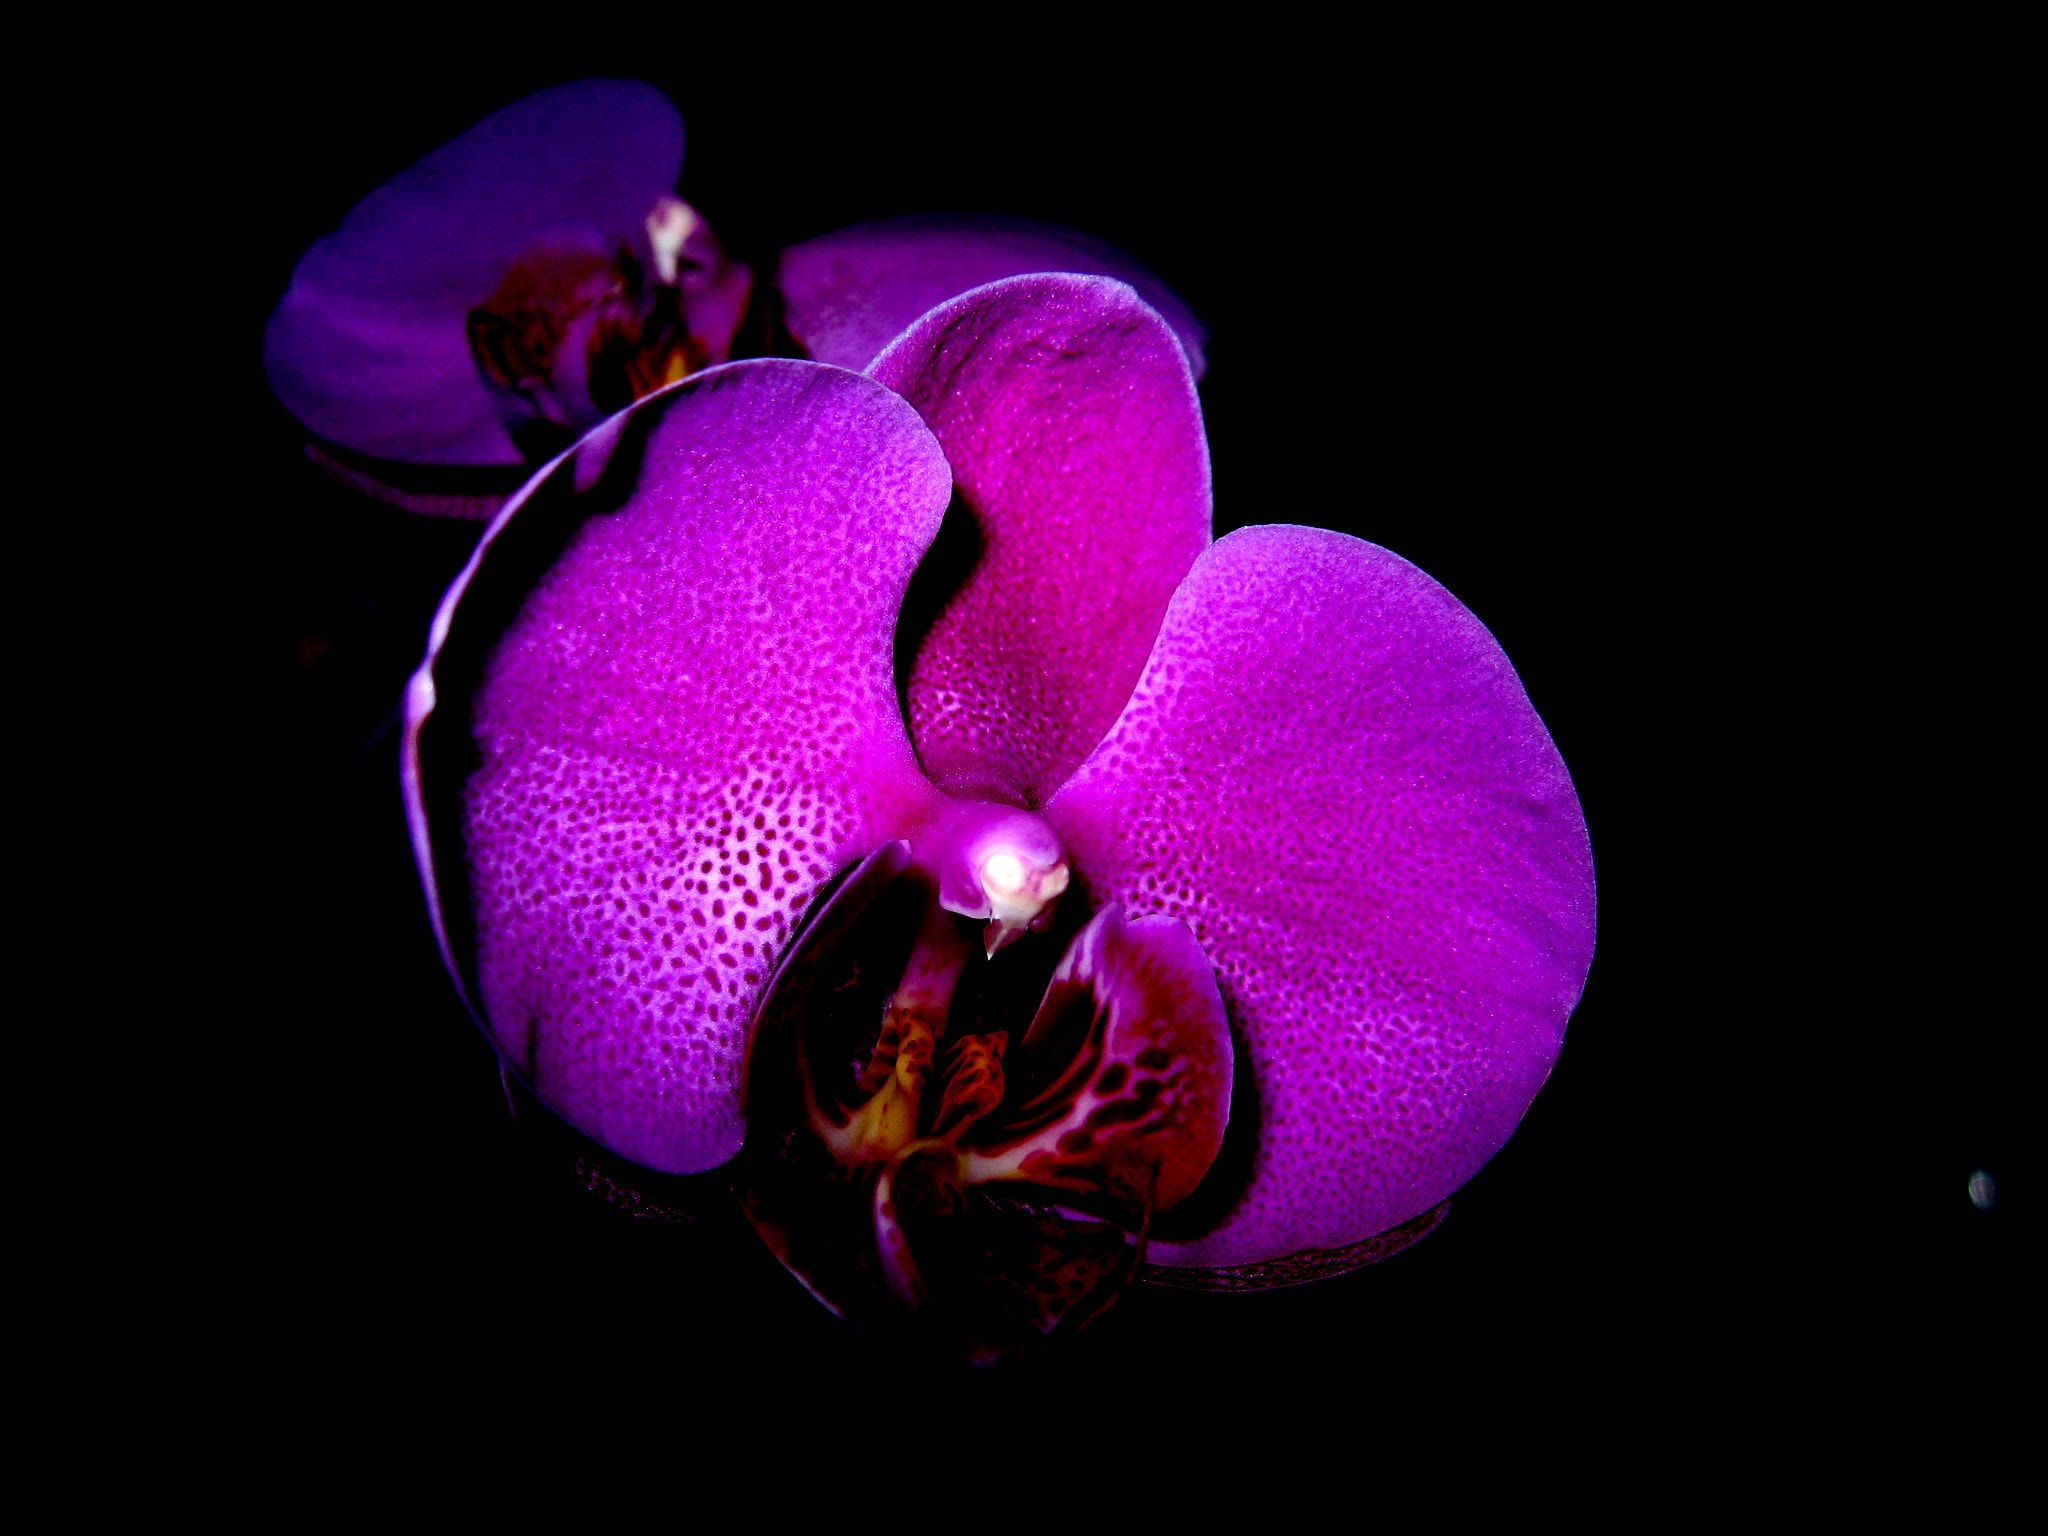 Canon POWERSHOT A540 sample photo. Orchidée dans la nuit photography